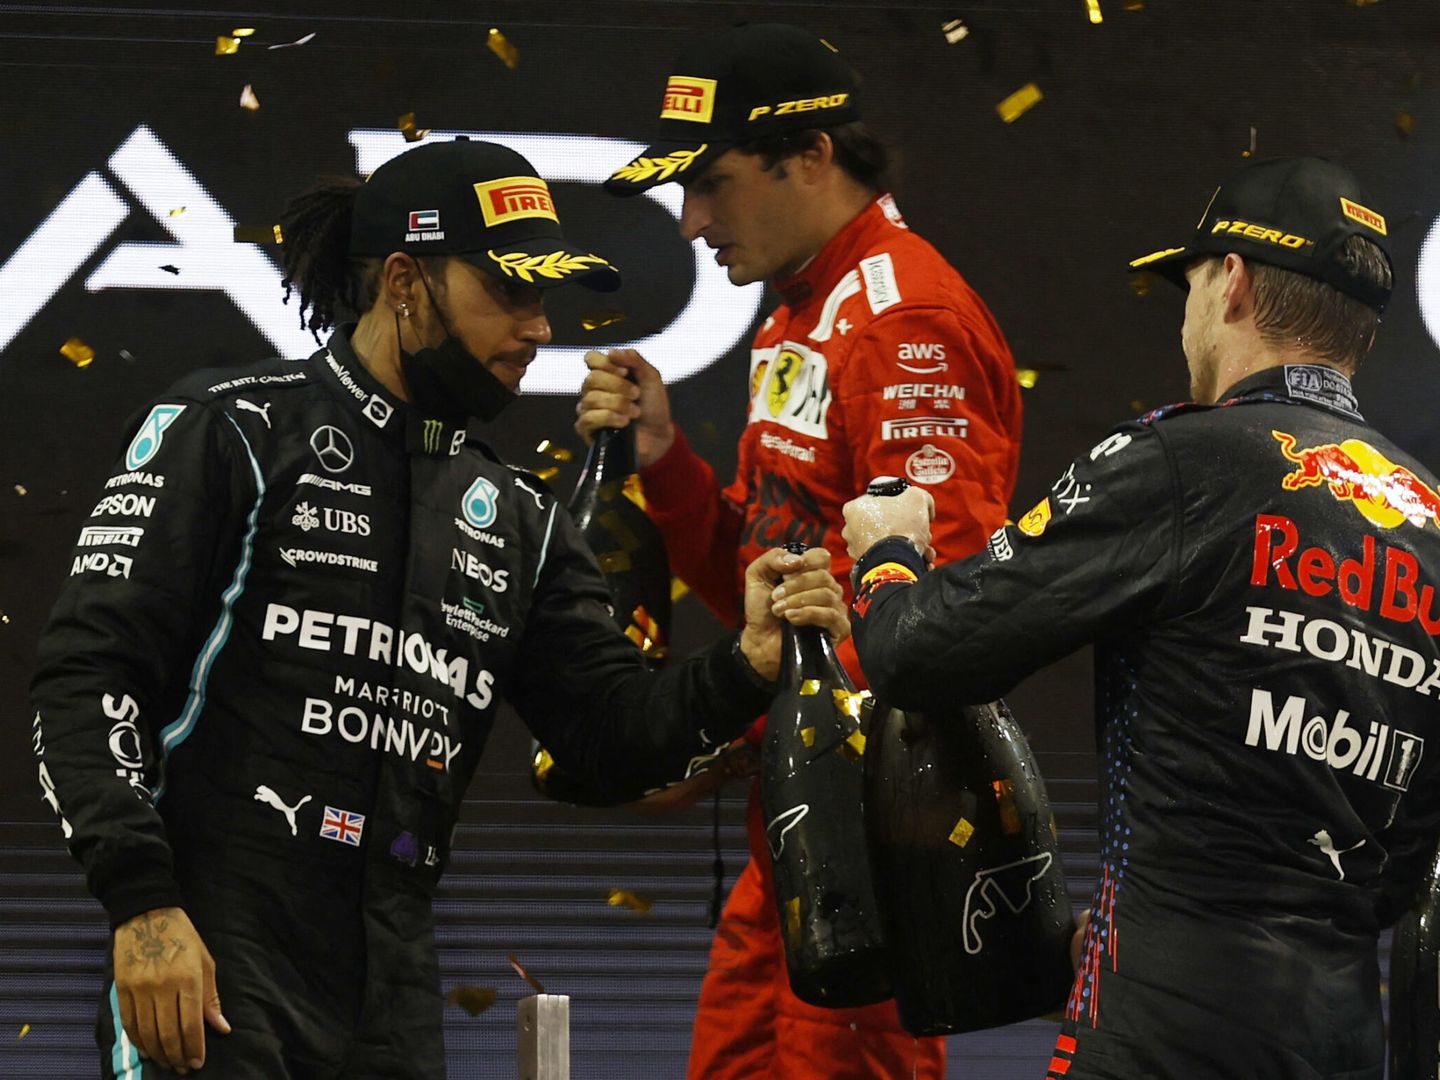 Para Villadelprat, se hizo justicia al final del campeonato con el título para Verstappen